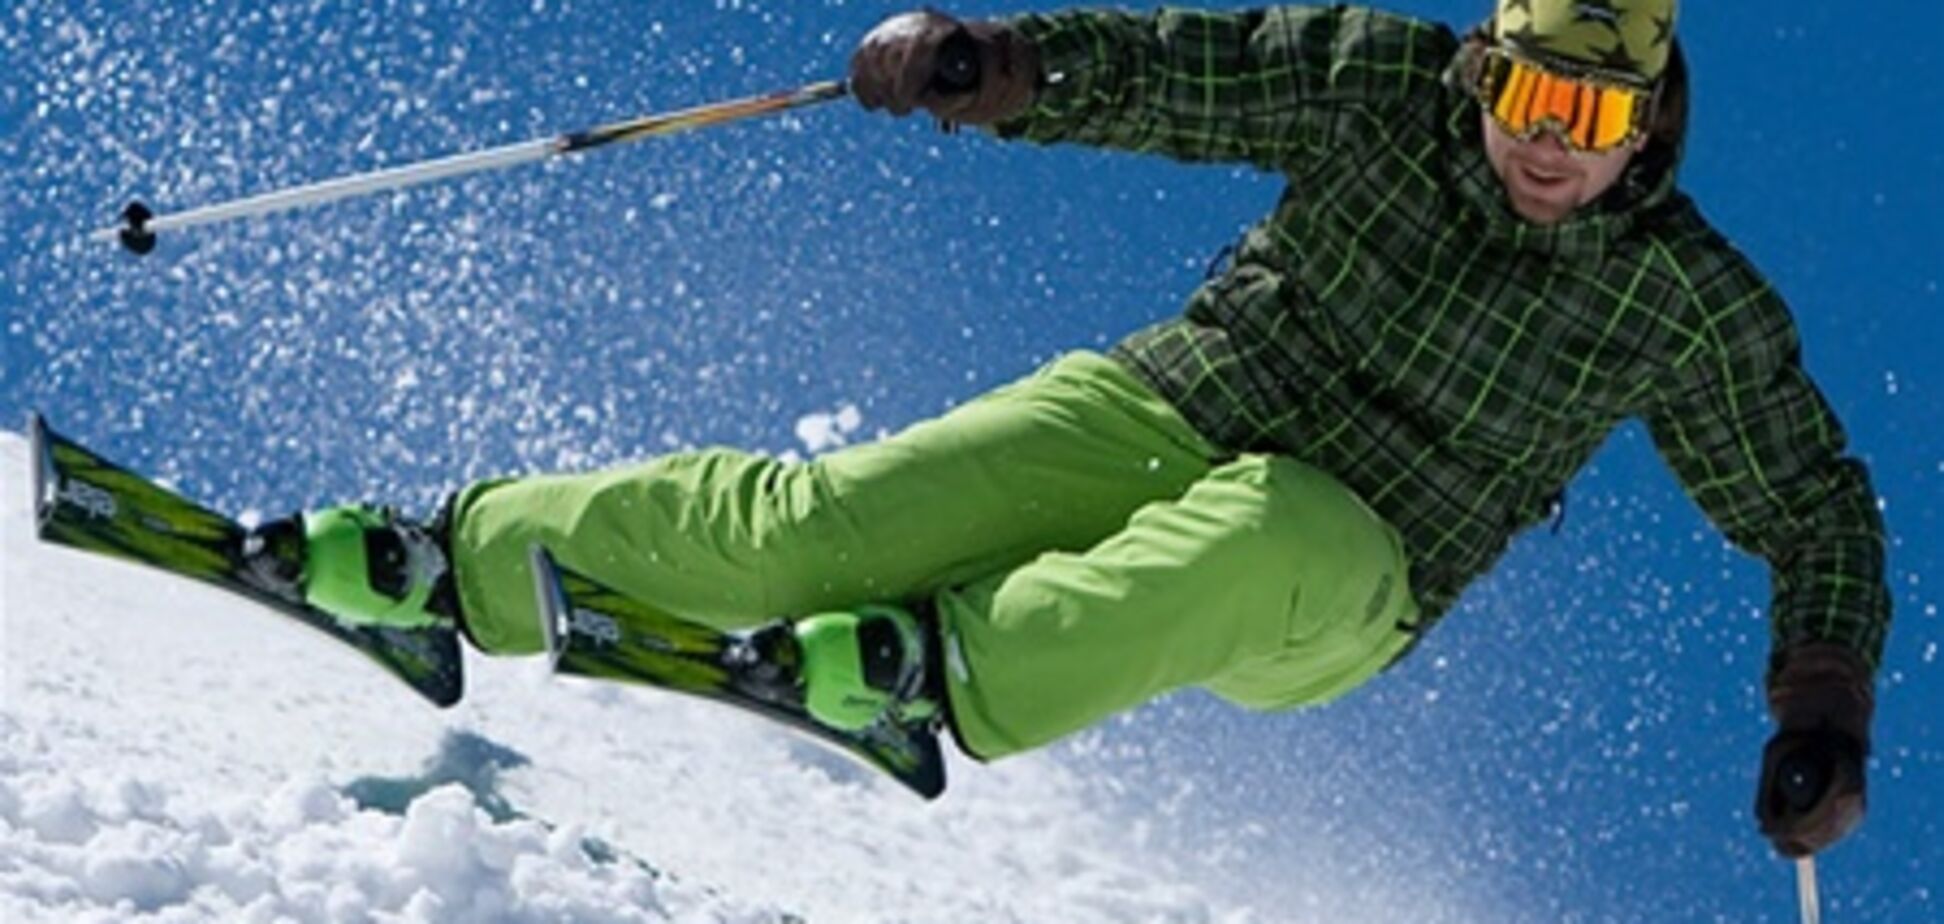 Сколько стоит лыжный отдых в Буковеле?